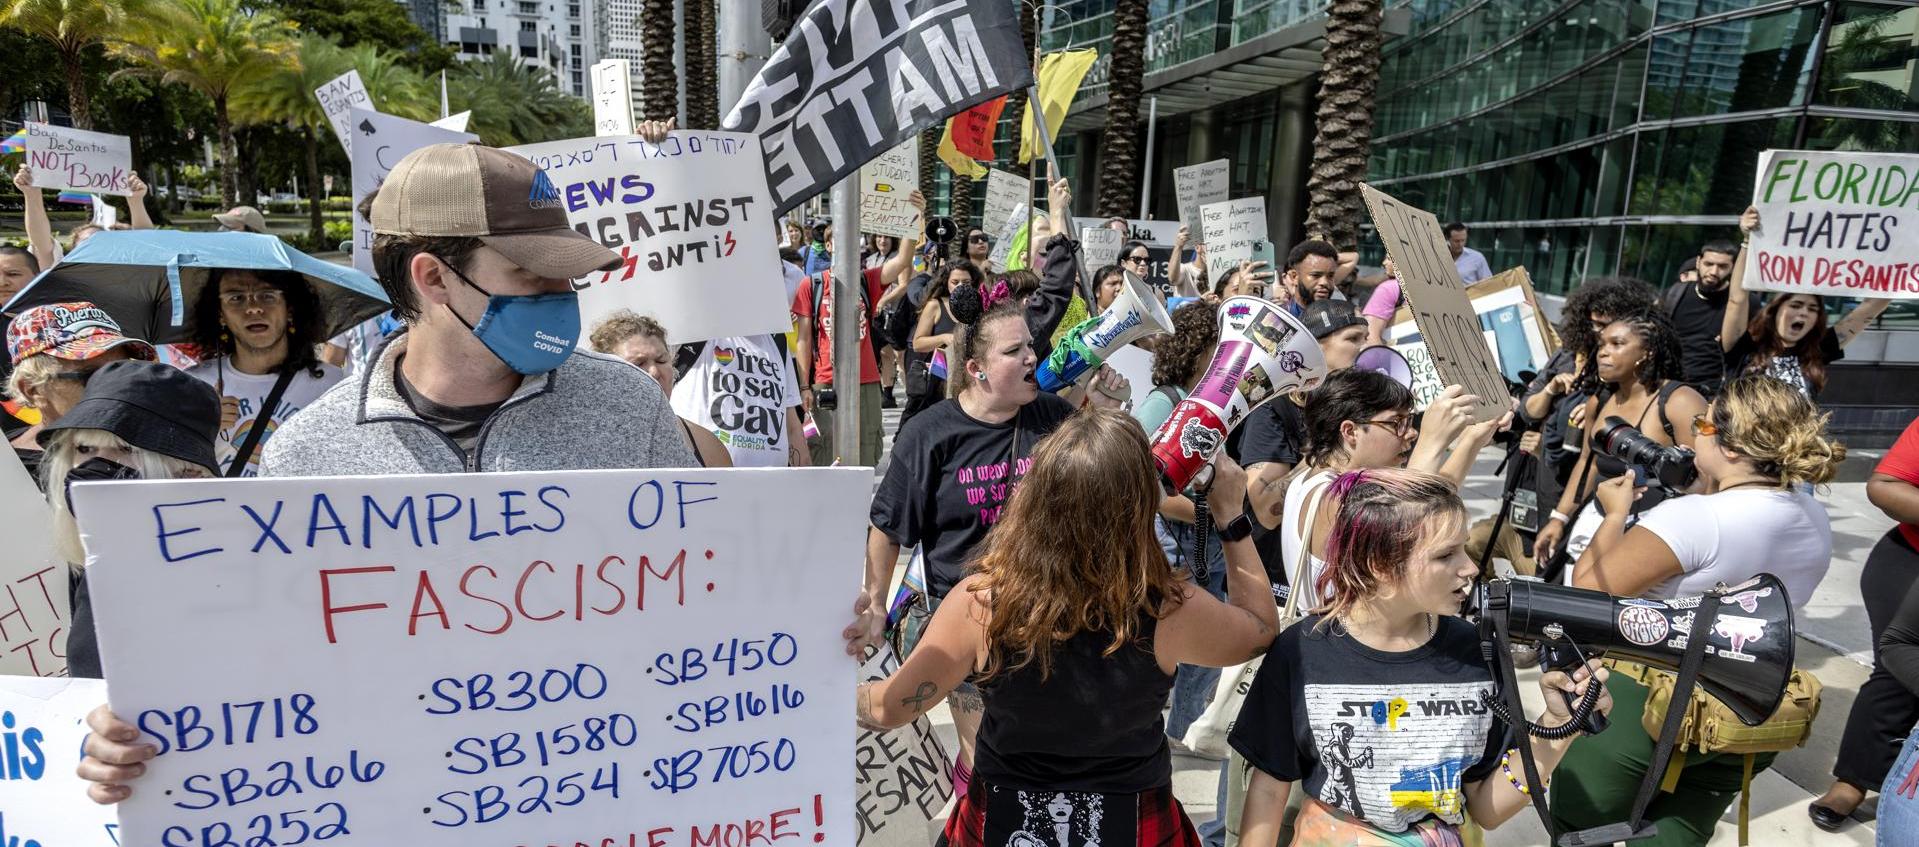 Los opositores al Gobernador de Florida DeSantis protestan contra su candidatura presidencial.